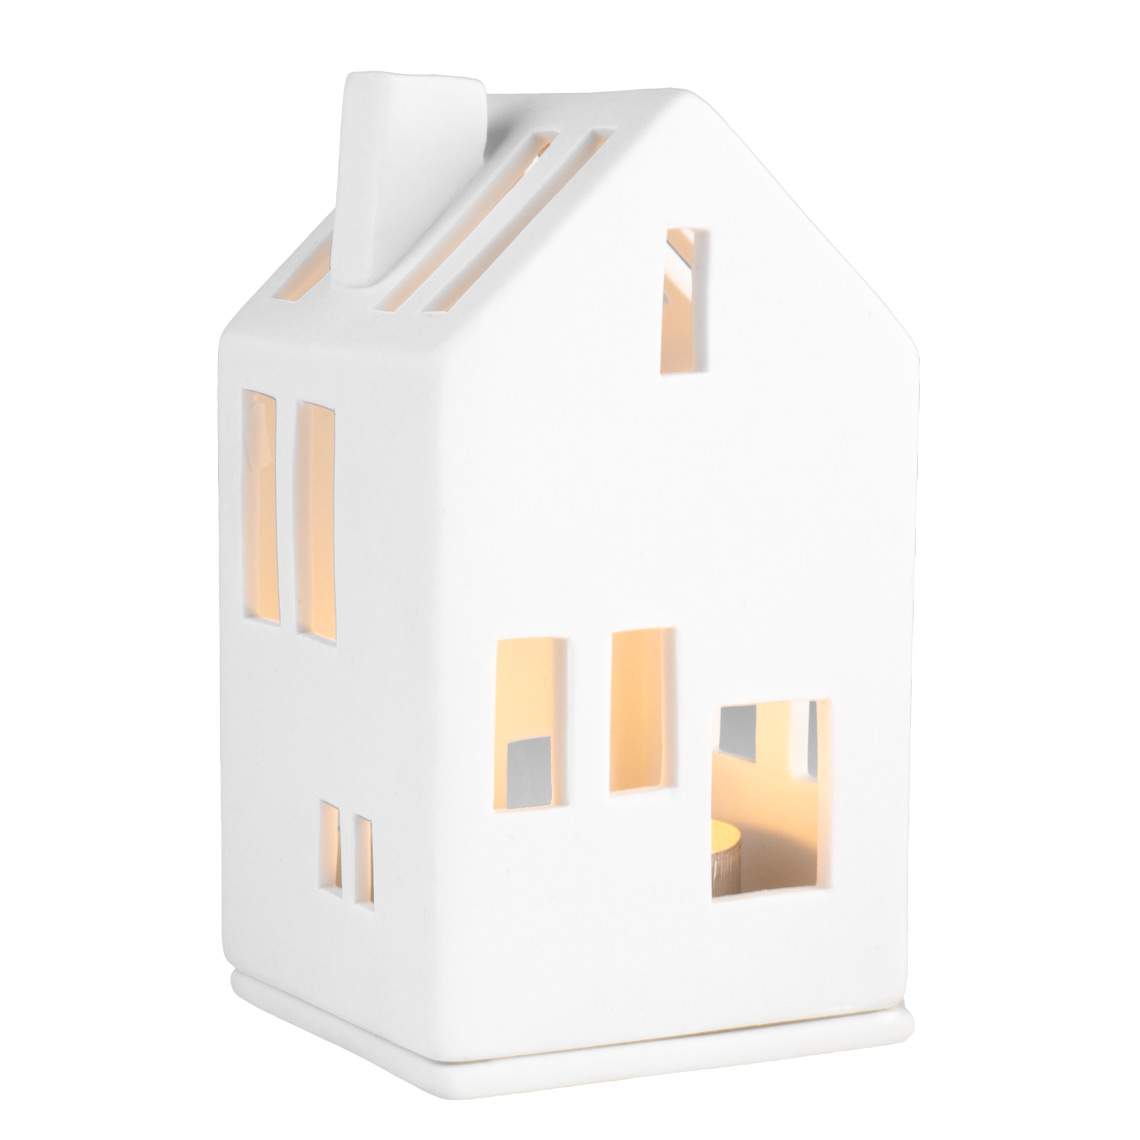 Mini light house residential house